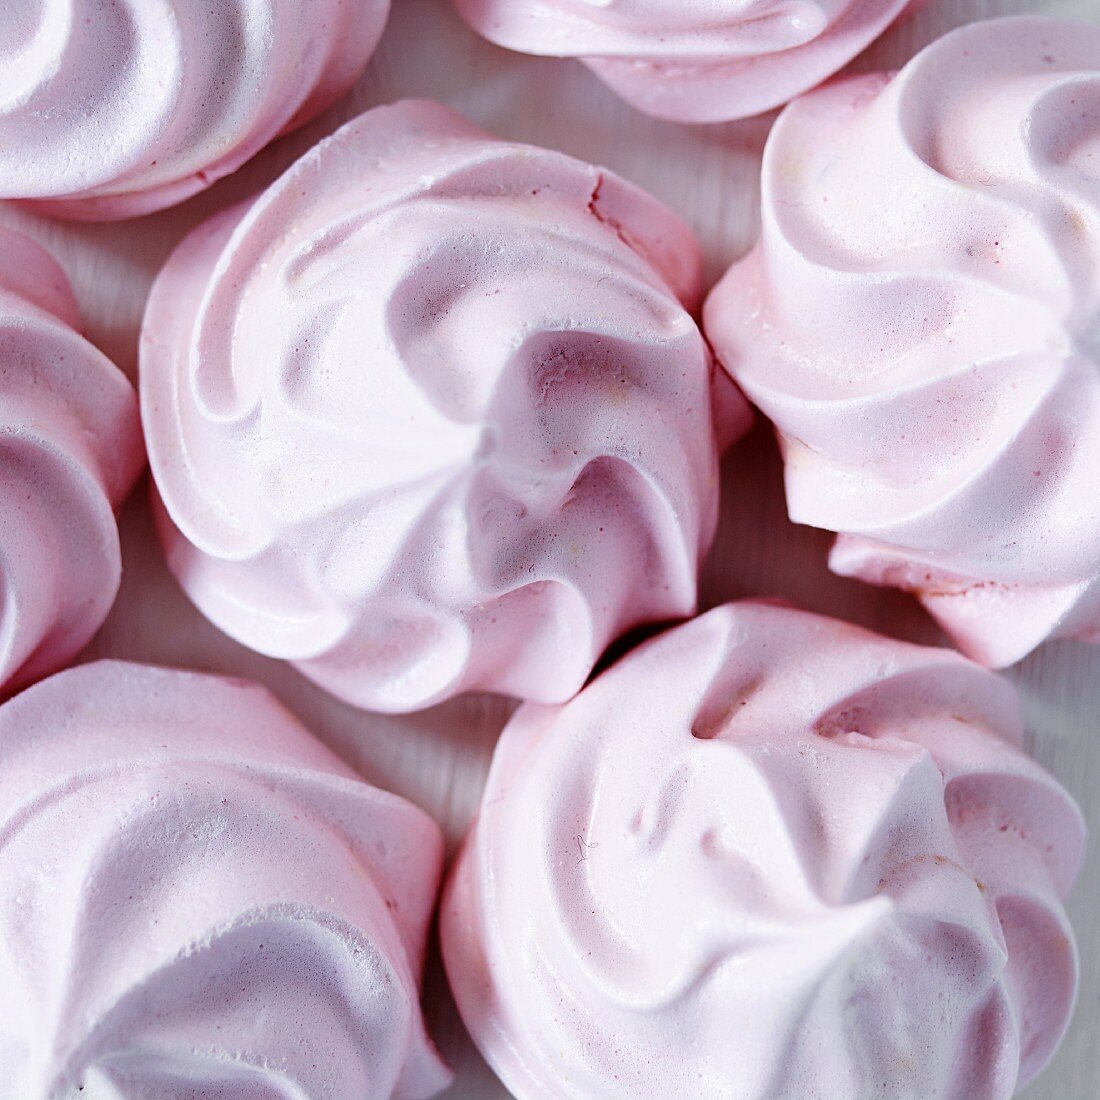 Pink meringues (close-up)